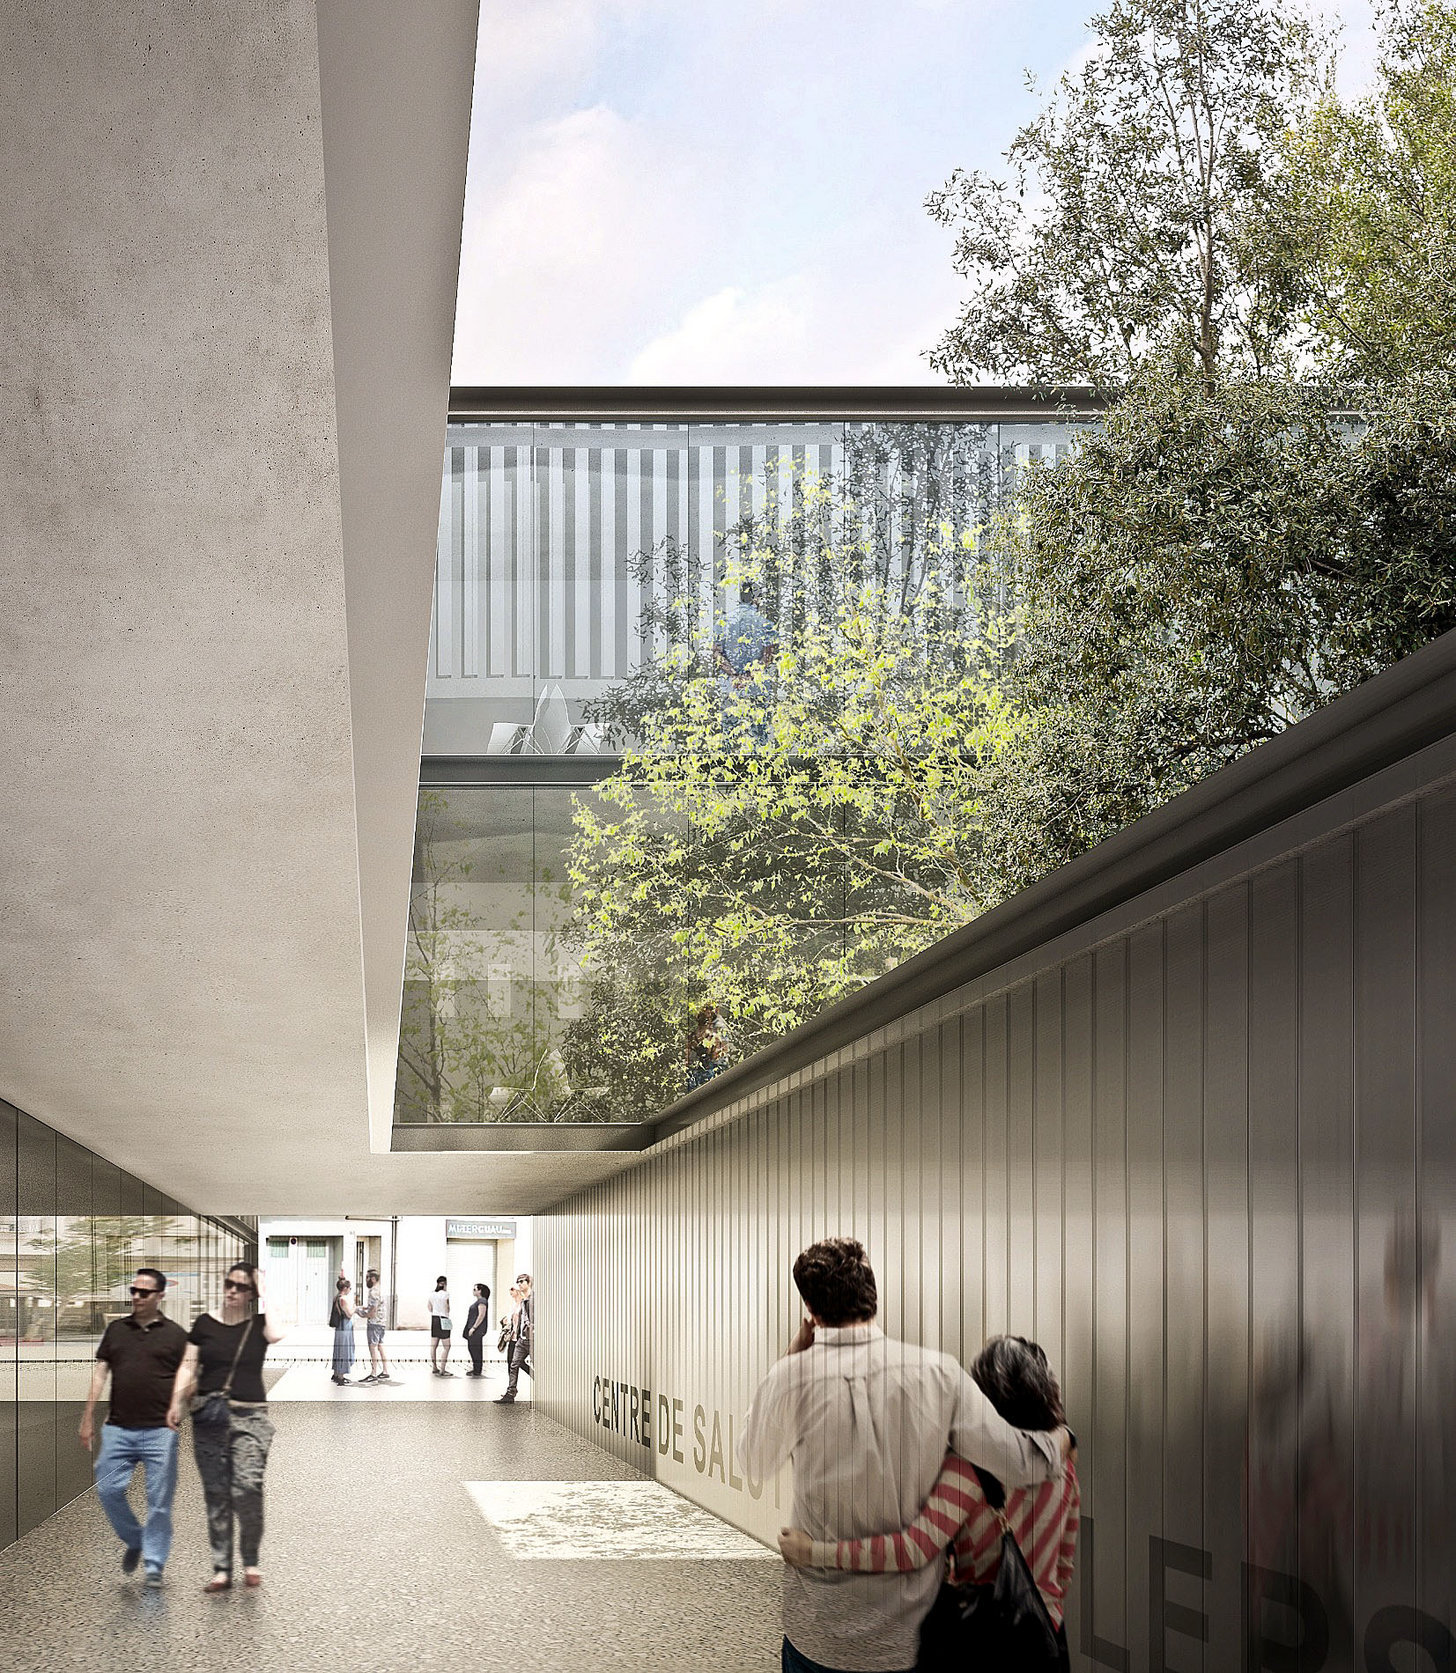 Un aspecte virtual dels exteriors del nou centre sanitari, segons el projecte de l'equip de l'arquitecte Ramon Sanabria